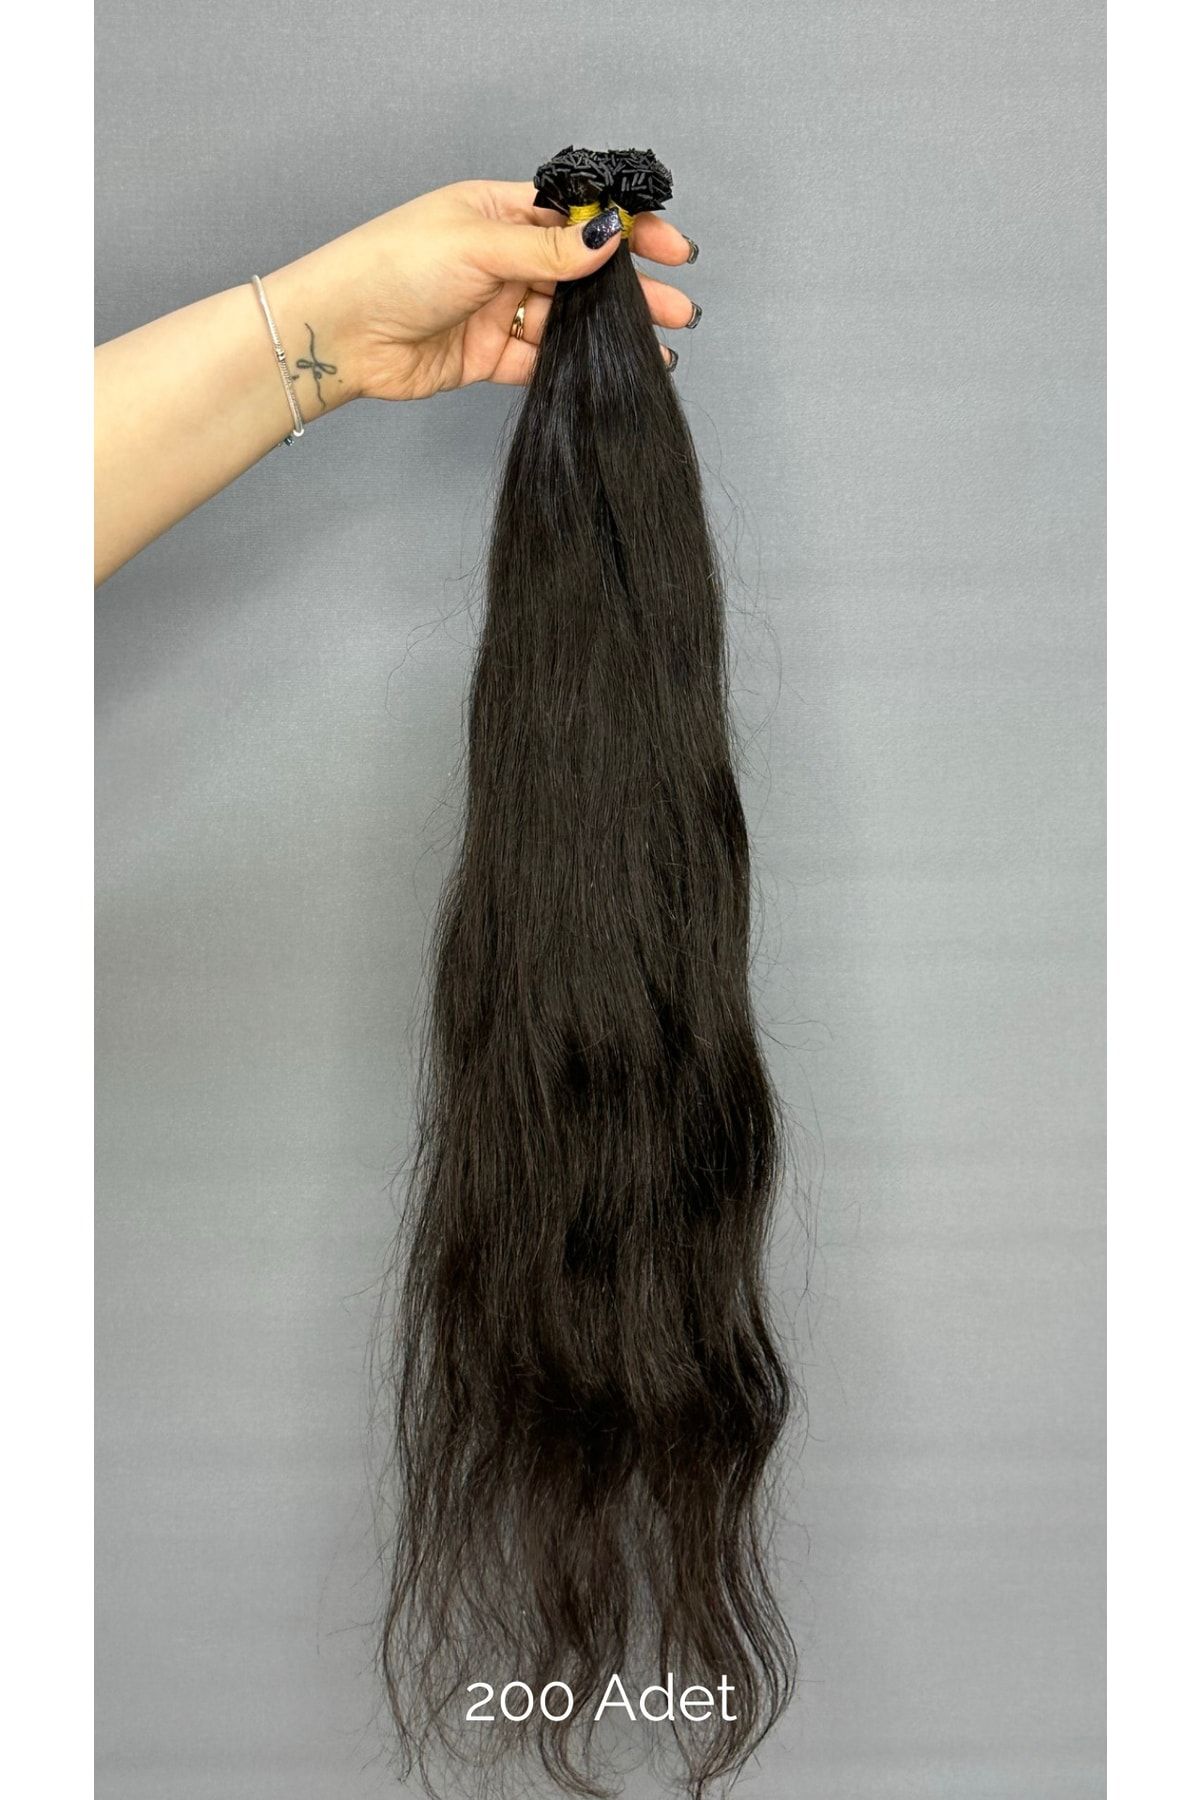 HalitCan HairKing %100 Doğal Gerçek Insan Saçı (70 CM) 50 Adet (30 GR) Mikro Kaynak